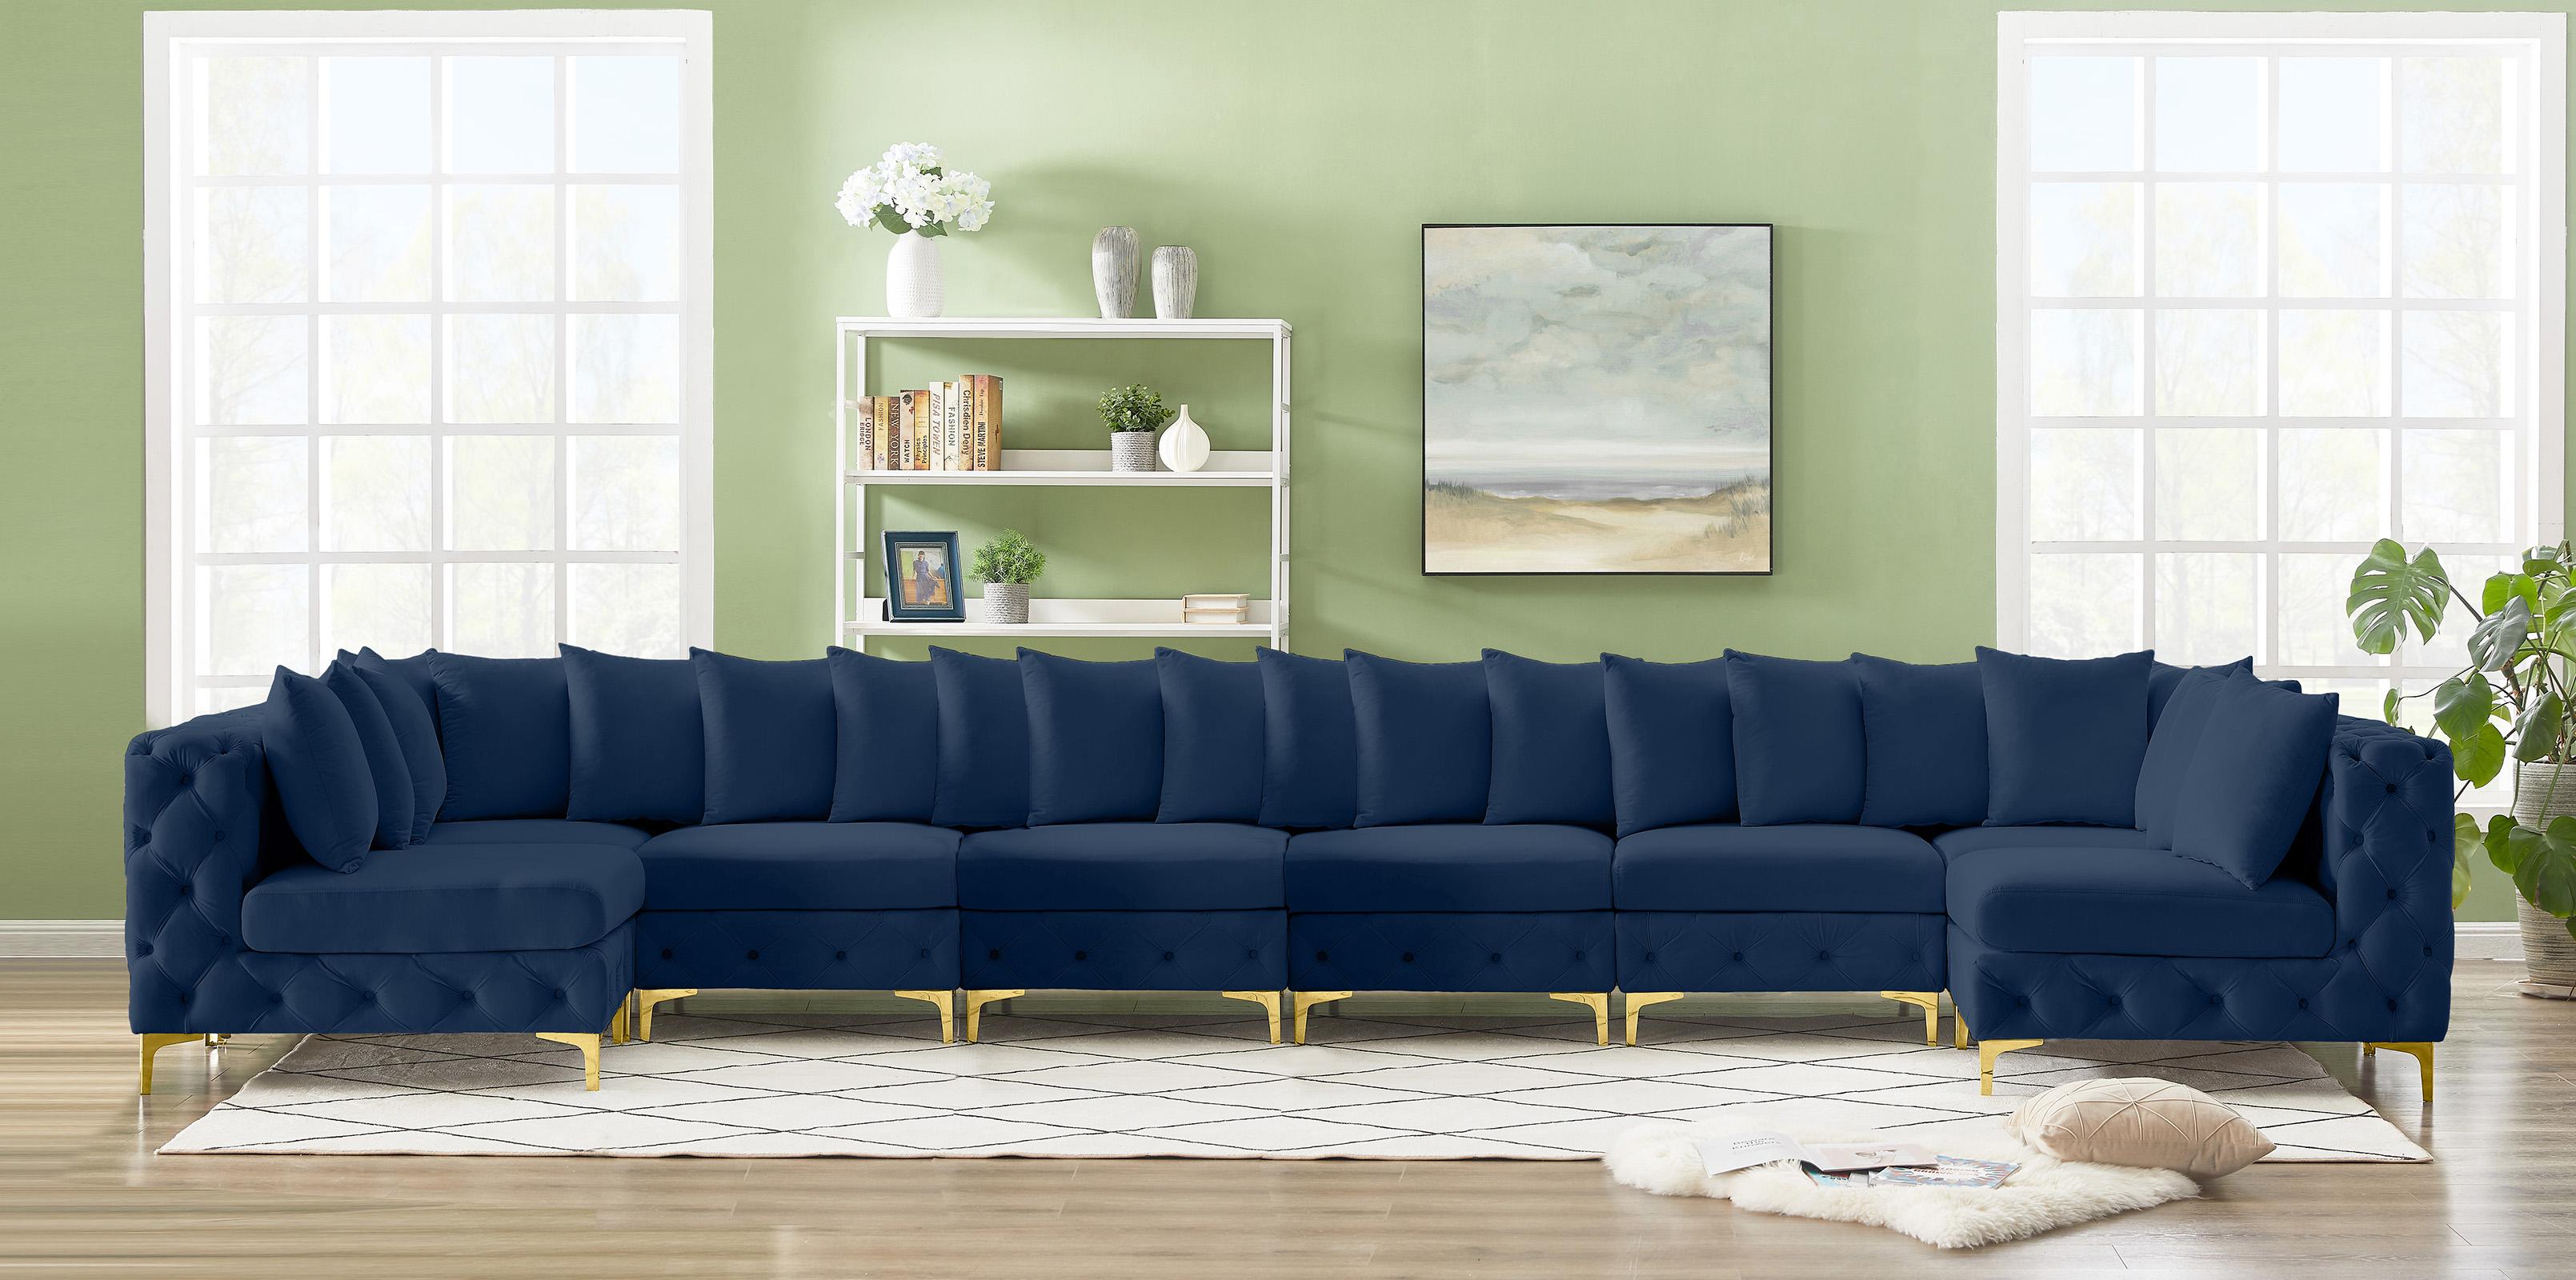 

    
686Navy-Sec8C Meridian Furniture Modular Sectional Sofa
